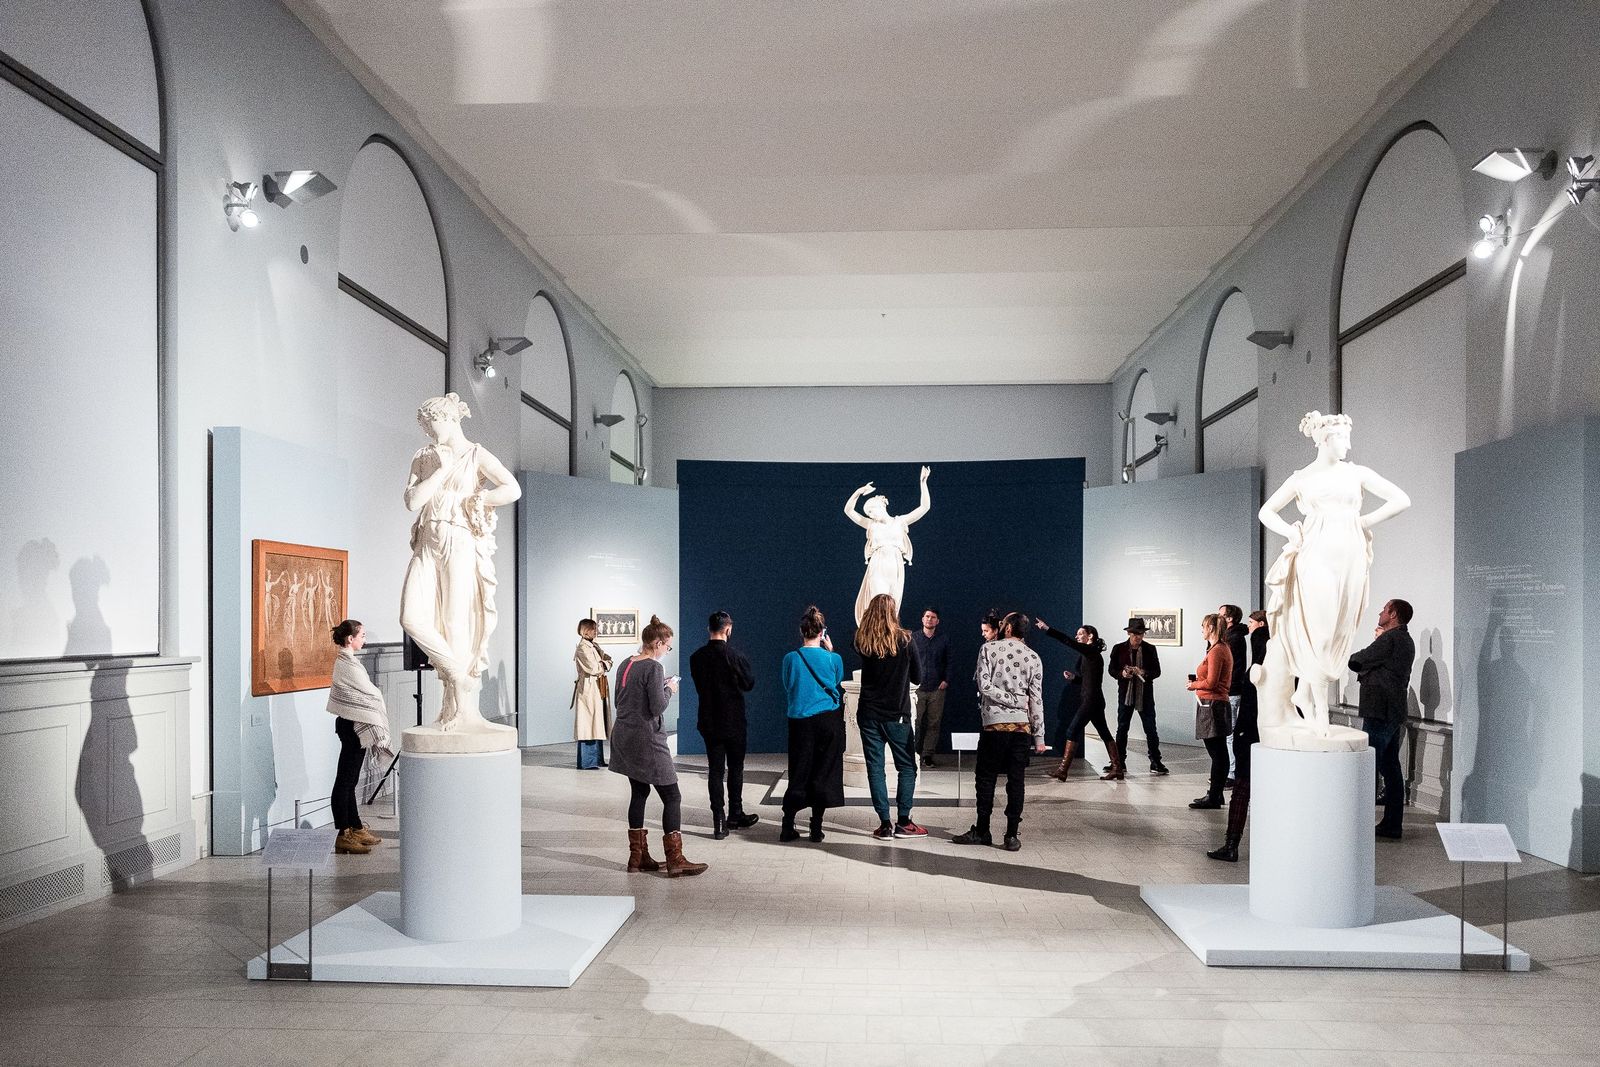 Bei Licht erläutern die Fachleute des Bode-Museums Spannendes zu den Skulpturen. Foto: Christoph Neumann, www.christoph-neumann.com